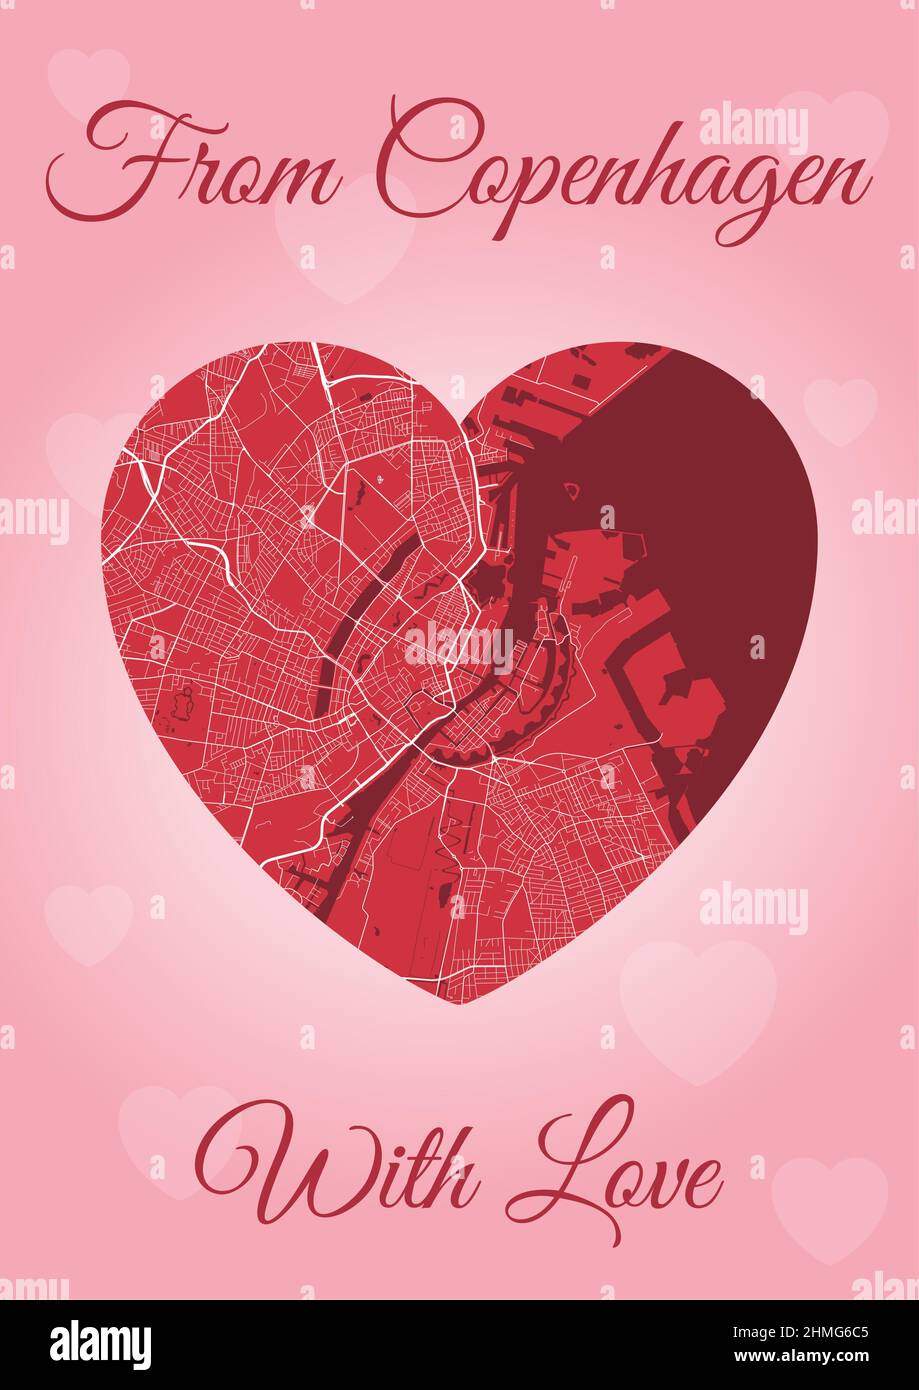 Von Kopenhagen mit Liebeskarte, Stadtplan in Herzform. Vertikale A4 Rosa und rote Farbvektordarstellung. Ich liebe City travel City Scape. Stock Vektor